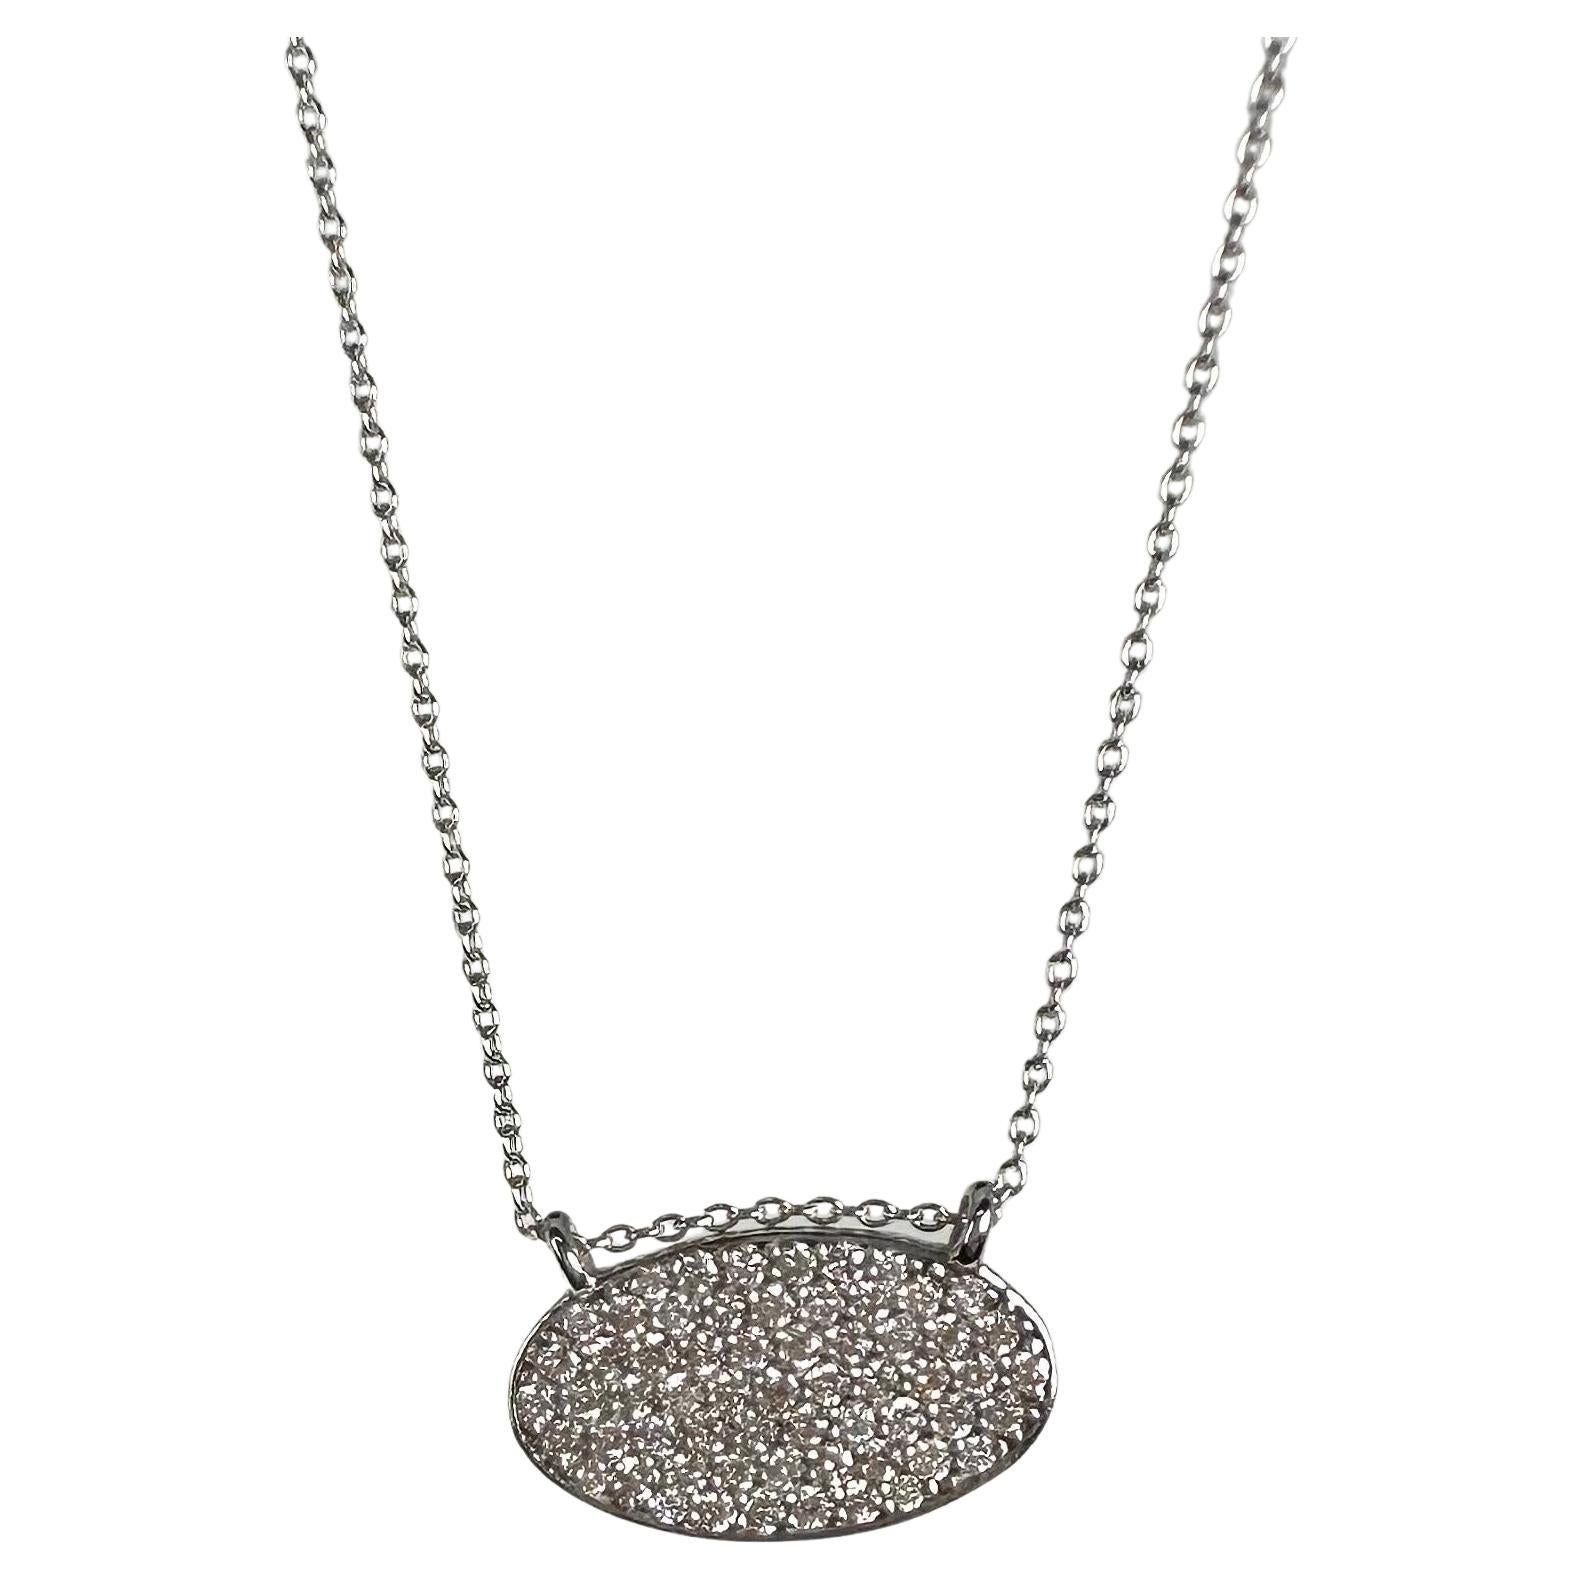 Oval modern pave set diamond pendant necklace 14KT 18"long  For Sale